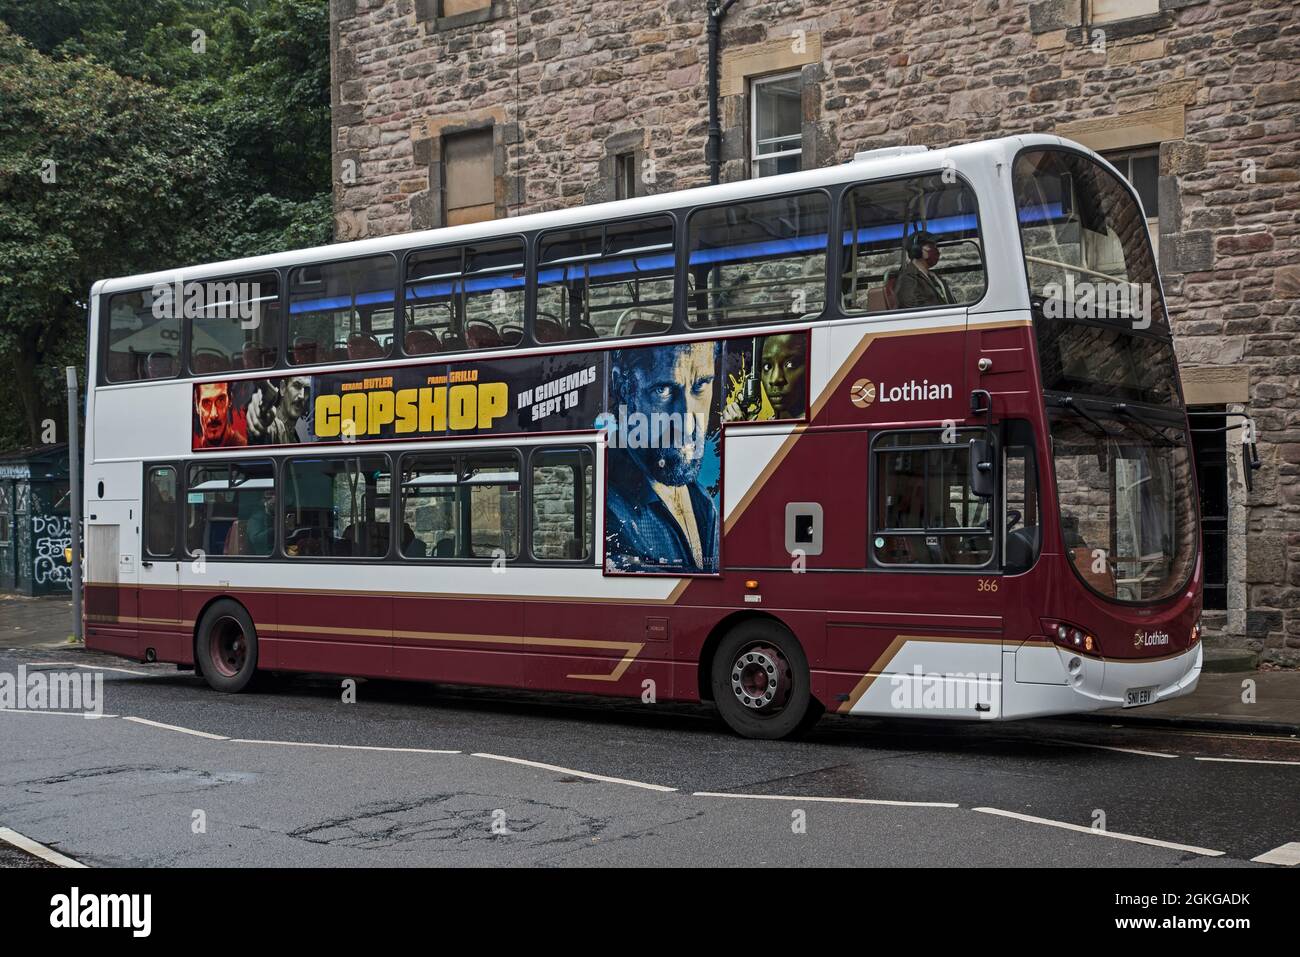 Lothian Bus che fa pubblicità al film Copshop a Edimburgo, Scozia, Regno Unito. Foto Stock